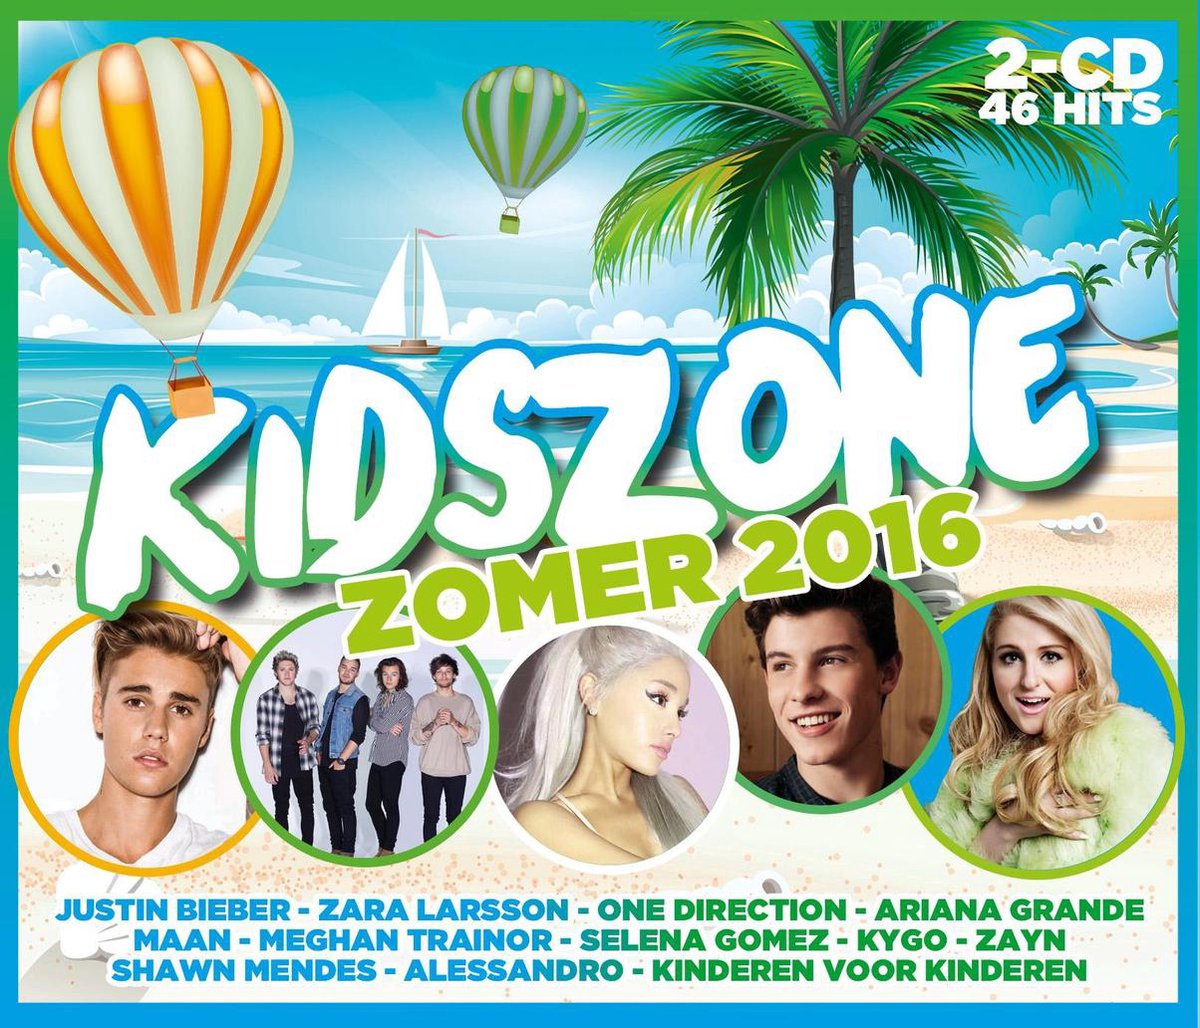 Kidszone Zomer 2016 - Various, various artists | CD (album) | Muziek |  bol.com